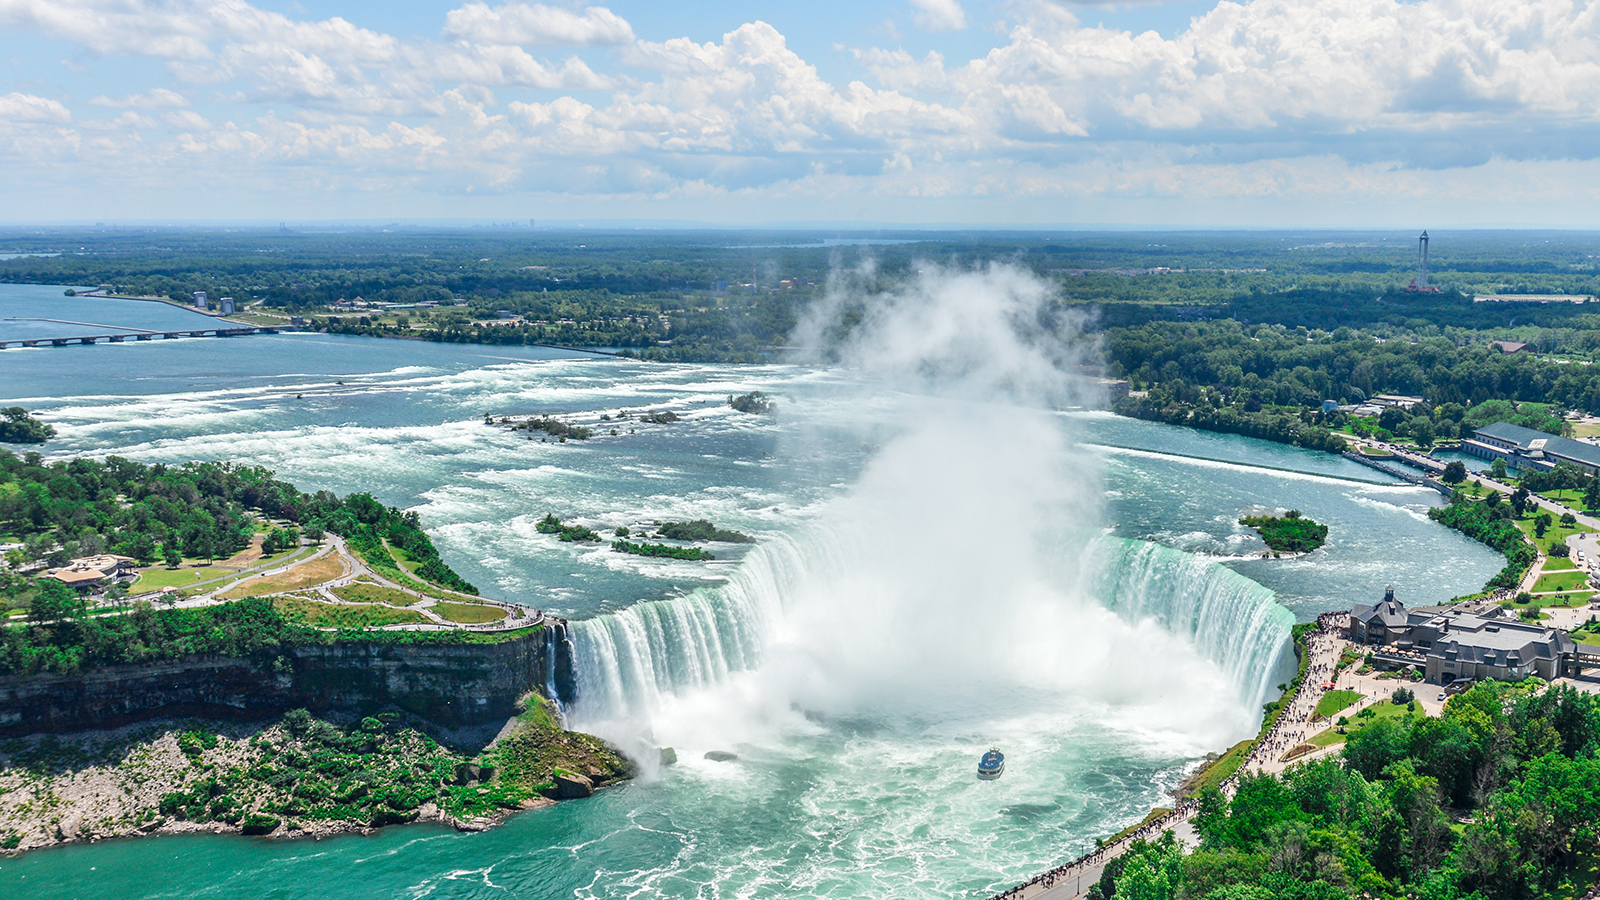 Ariel view of Niagara Falls